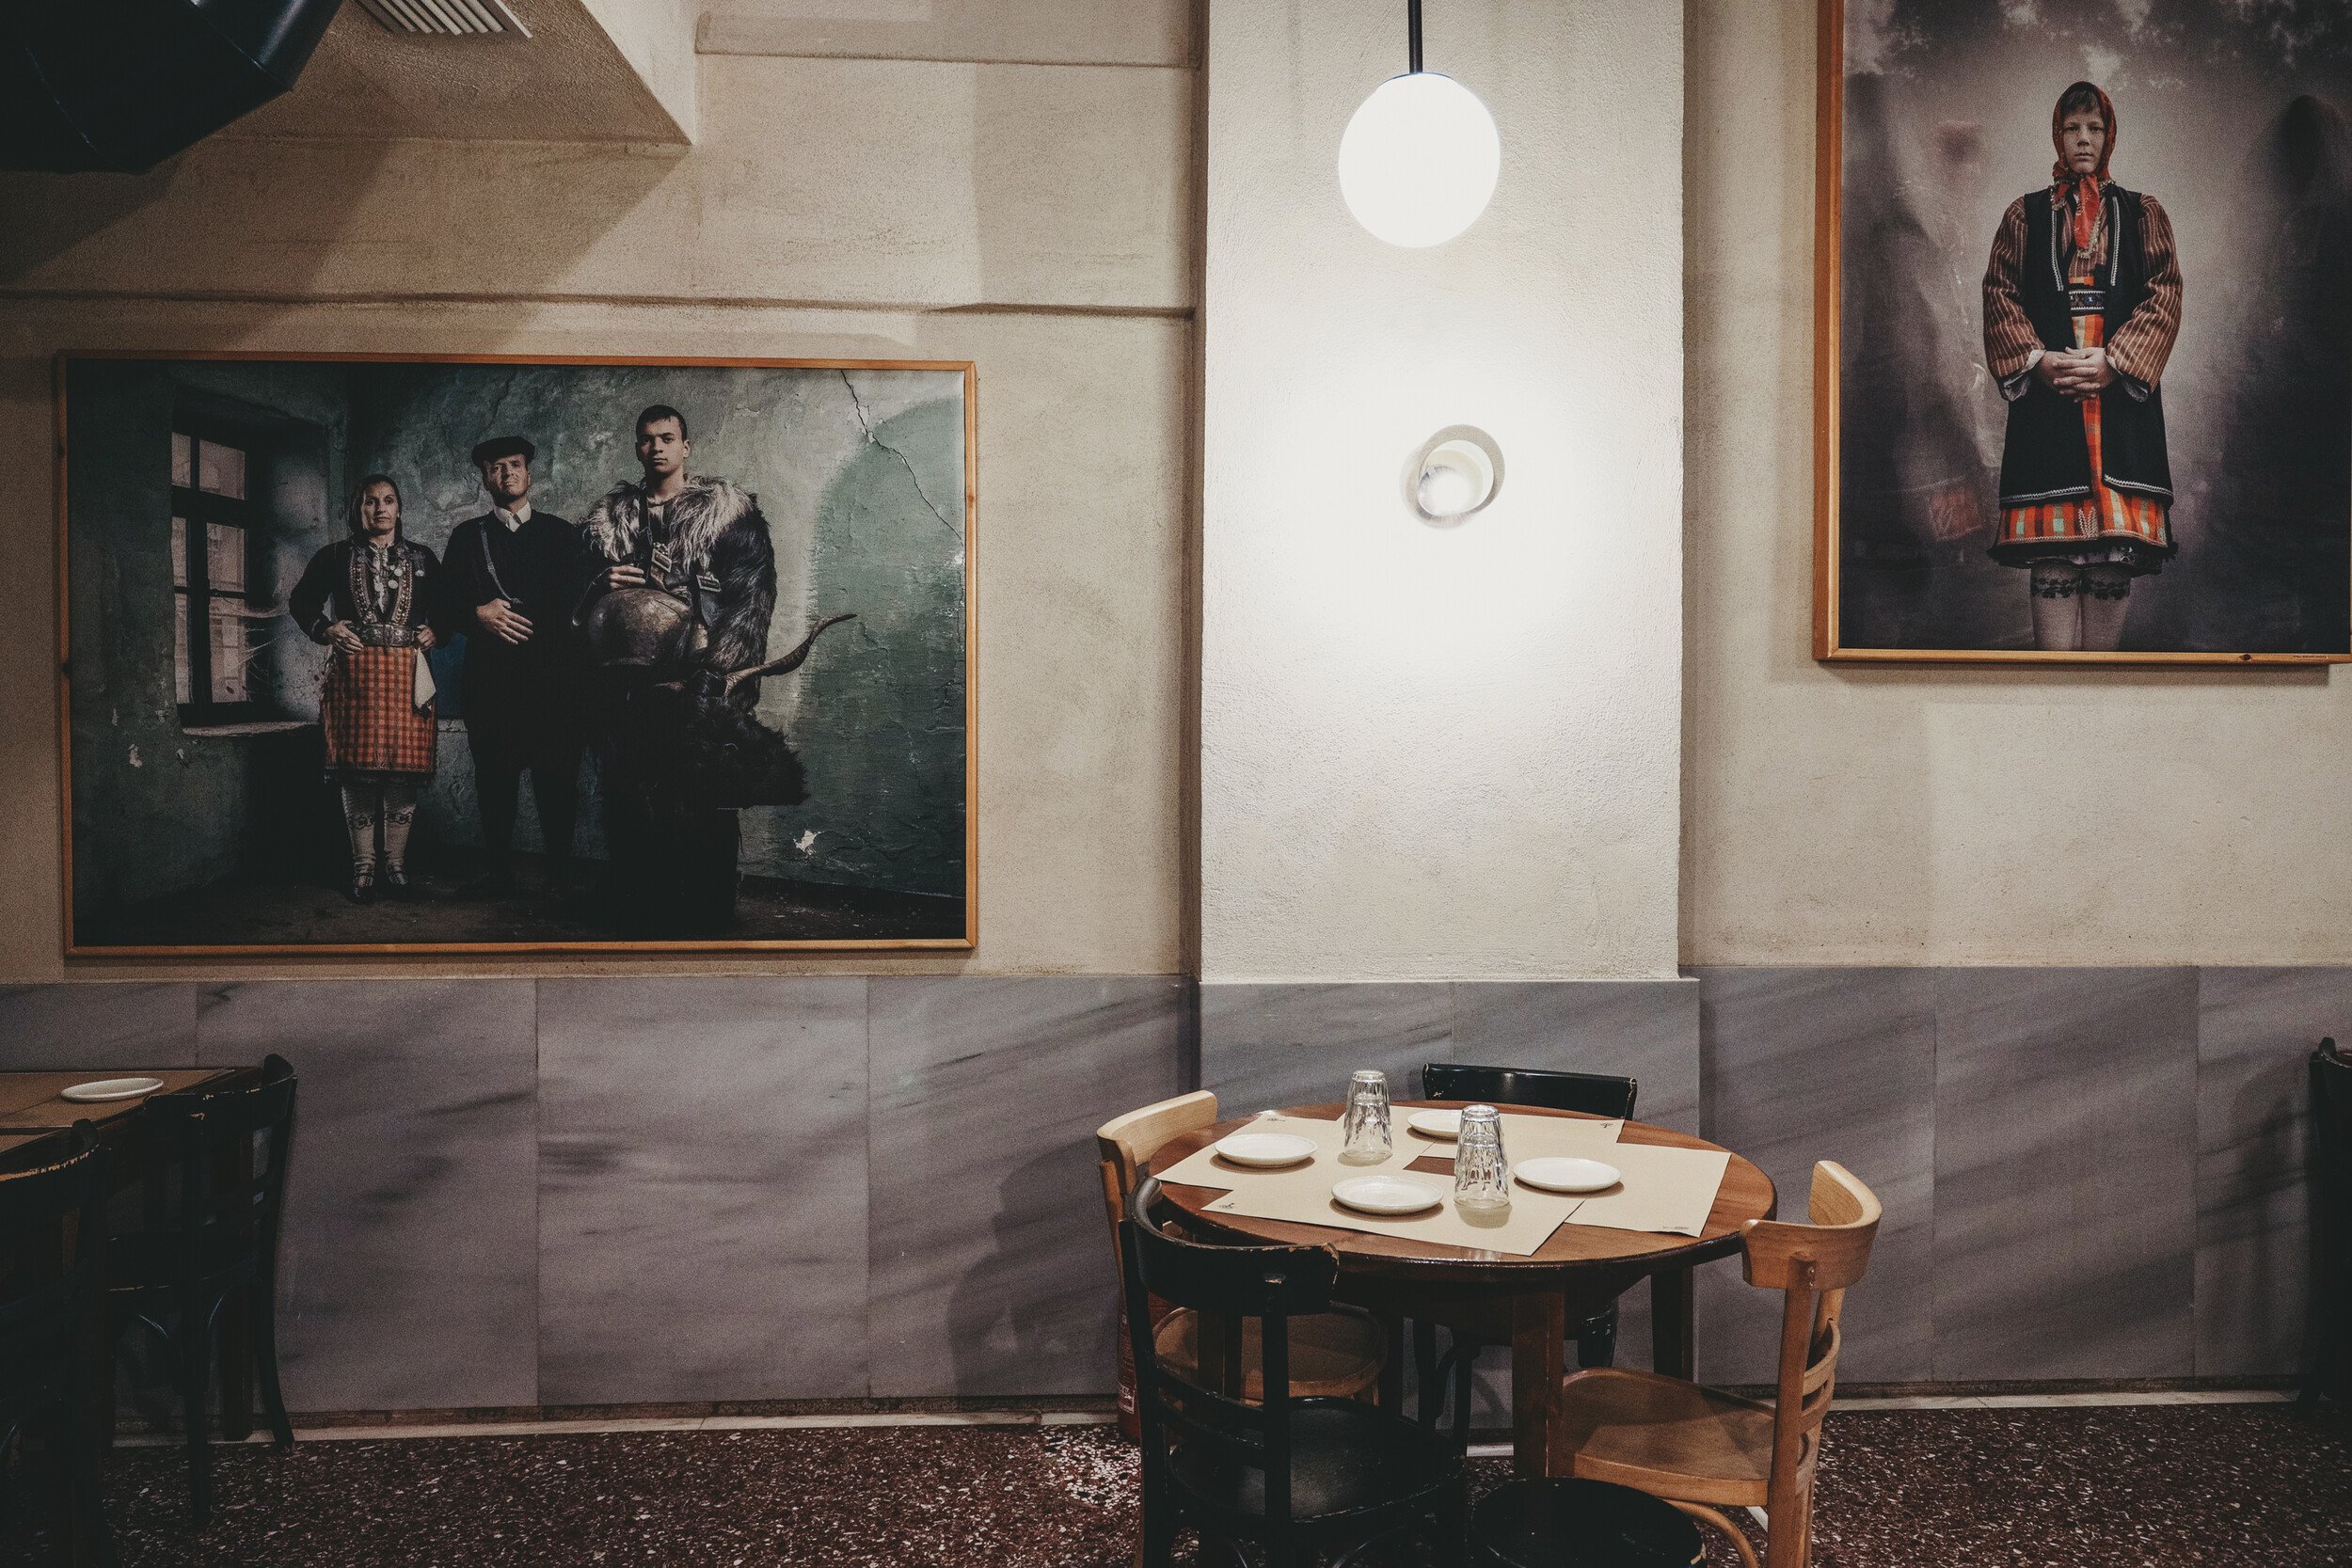 Γιατί είναι τόσο καλό το φαγητό στη Θεσσαλονίκη; Ο λόγος είναι αυτά τα τέσσερα εστιατόρια